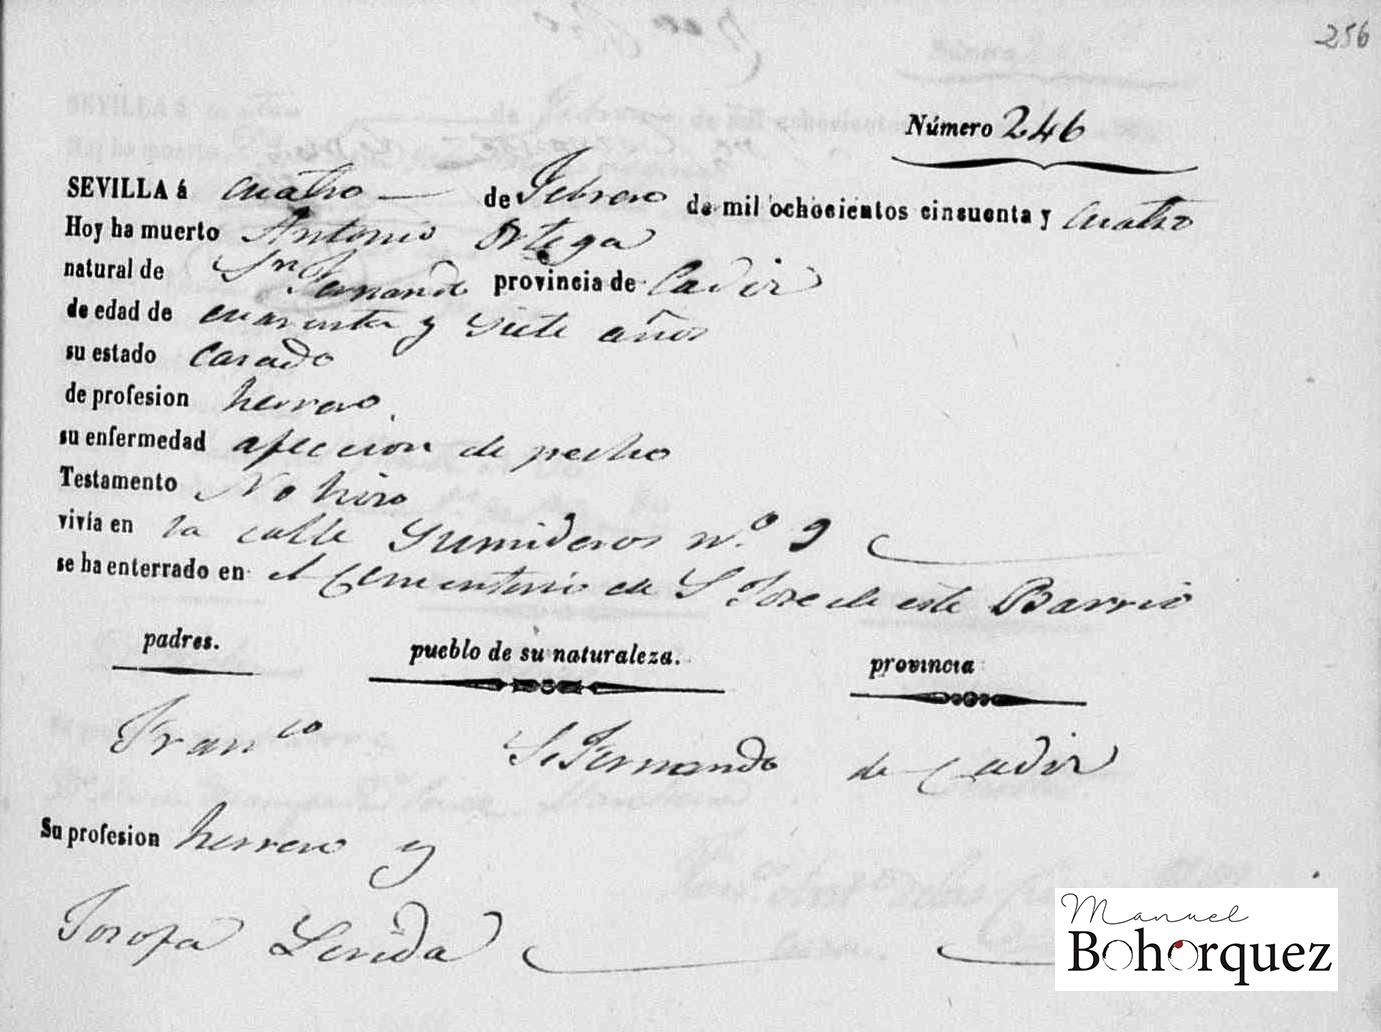 Muerte de Antonio el Fillo en el Registro Civil de Sevilla, 1854. Archivo Bohórquez.